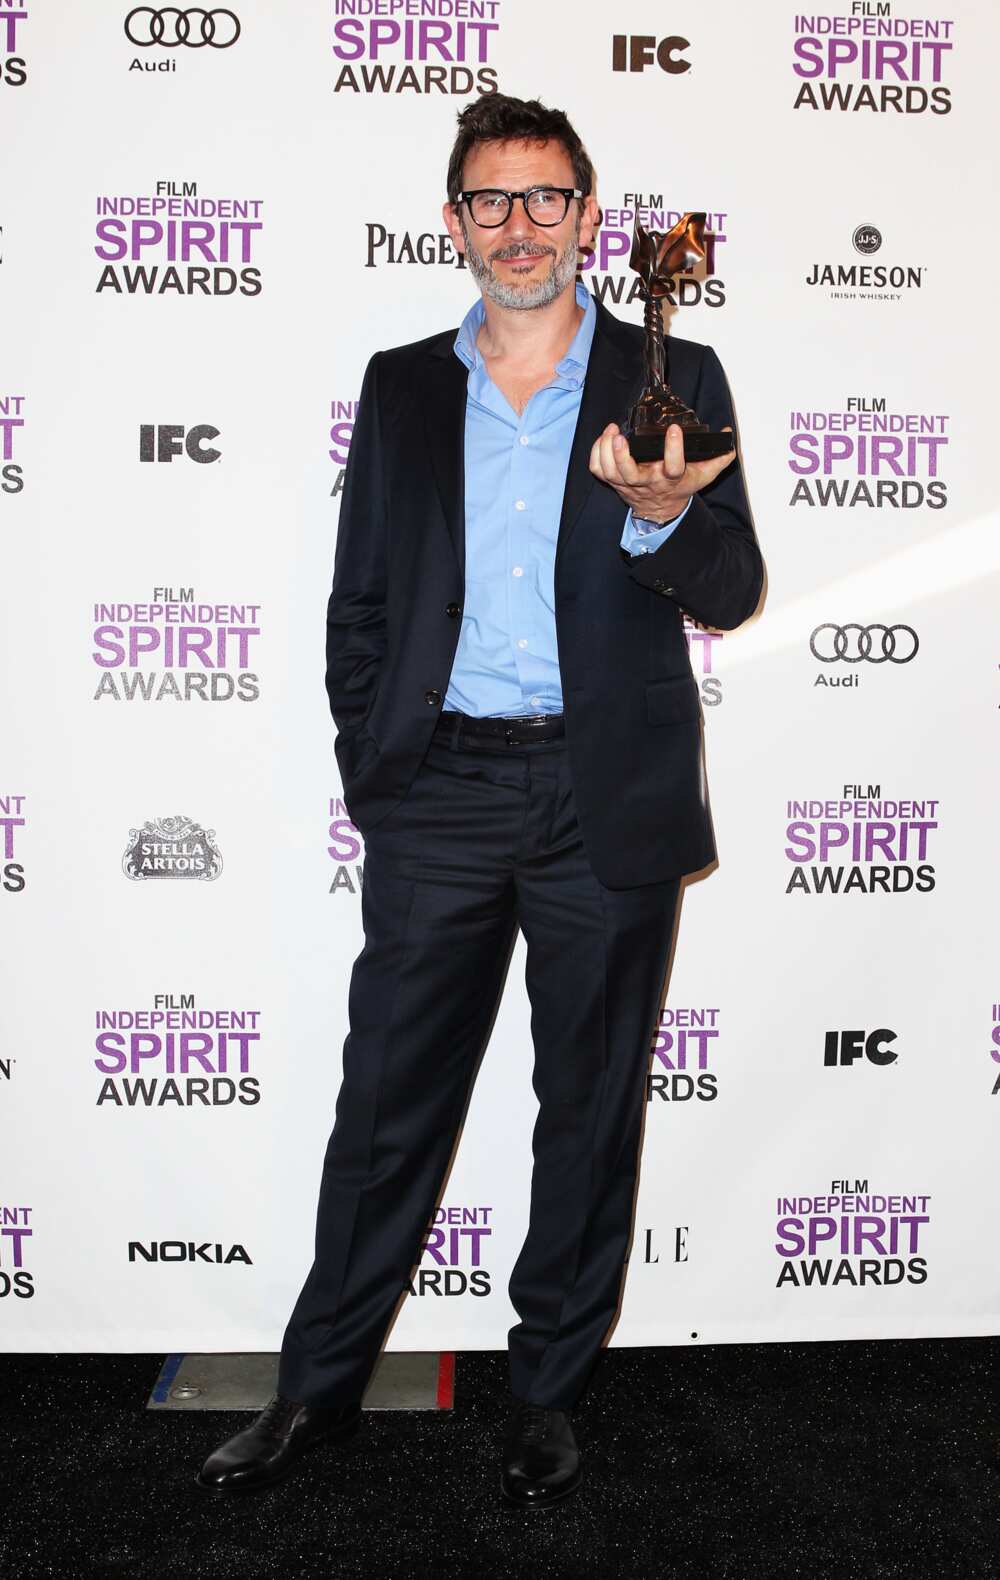 Michel Hazanavicius pose avec le prix du meilleur long métrage pour "The Artist" dans la salle de presse aux Film Independent Spirit Awards 2012 à la jetée de Santa Monica le 25 février 2012 à Santa Monica, en Californie. (Photo de Joe Scarnici/WireImage)